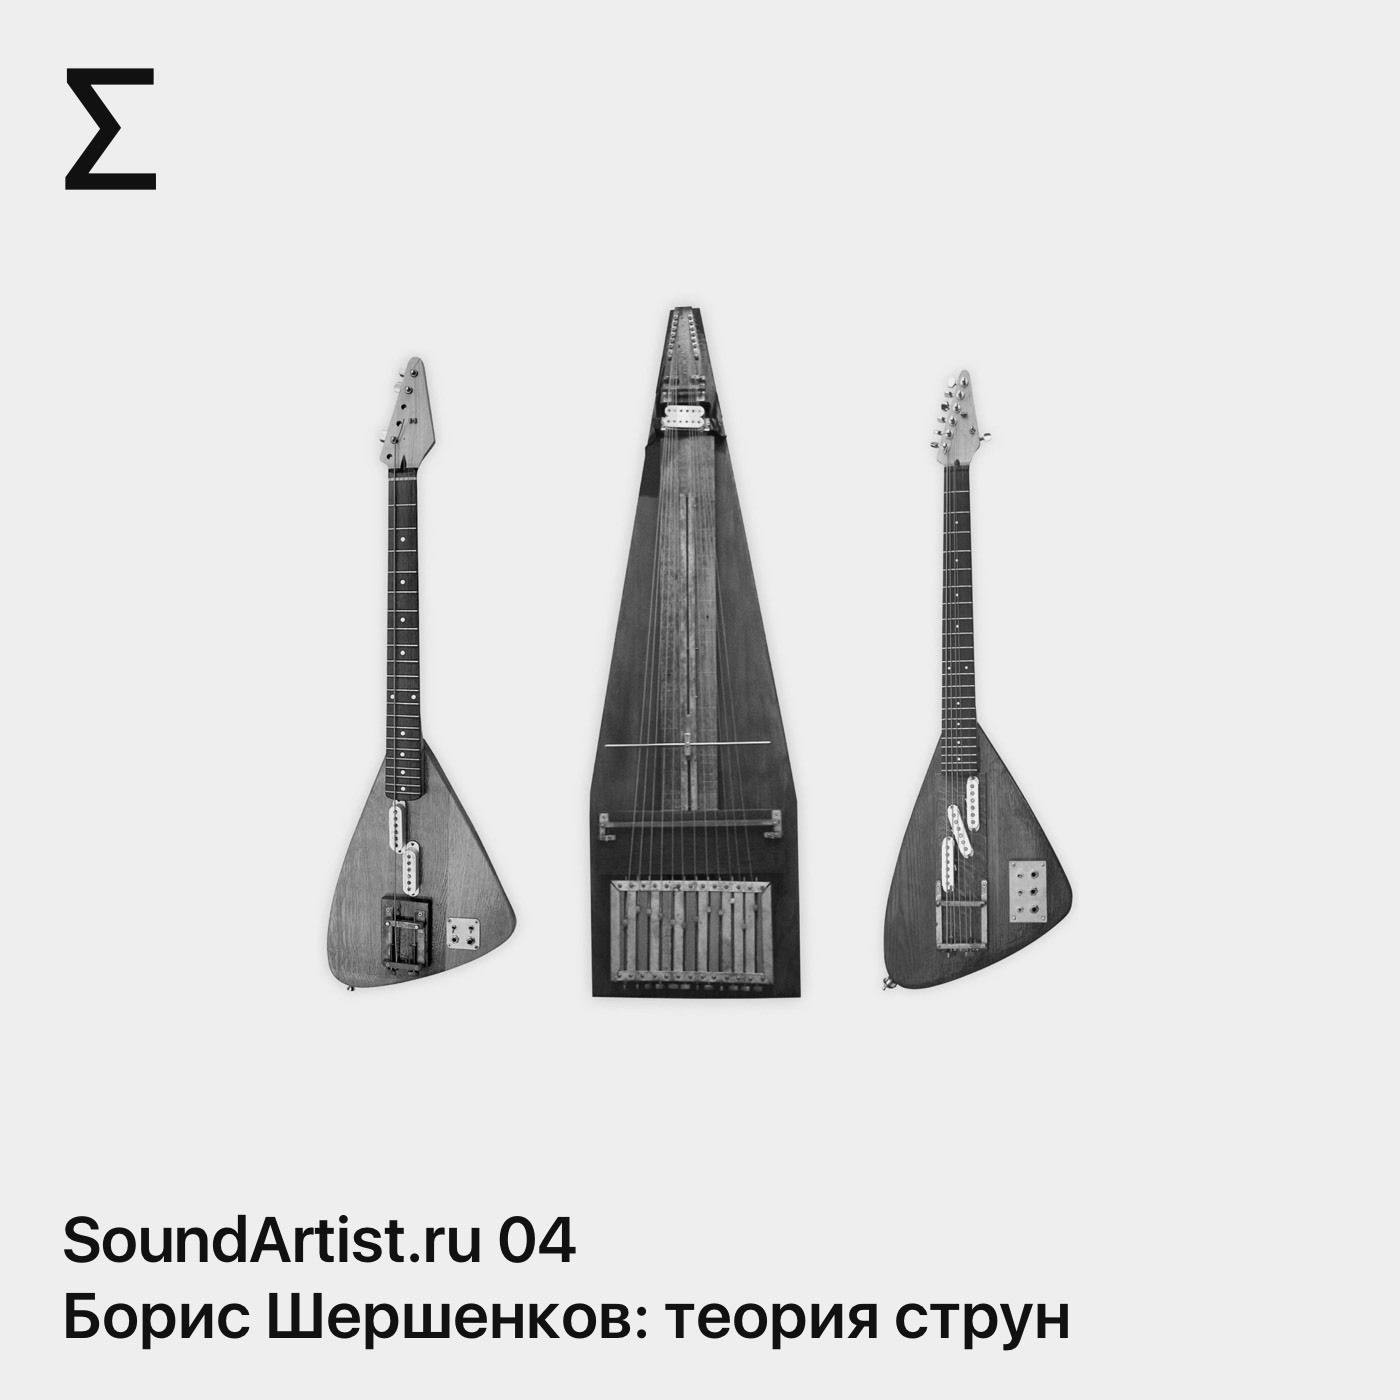 SoundArtist.ru 04 – Борис Шершенков. Экспериментальные музыкальные инструменты: теория струн